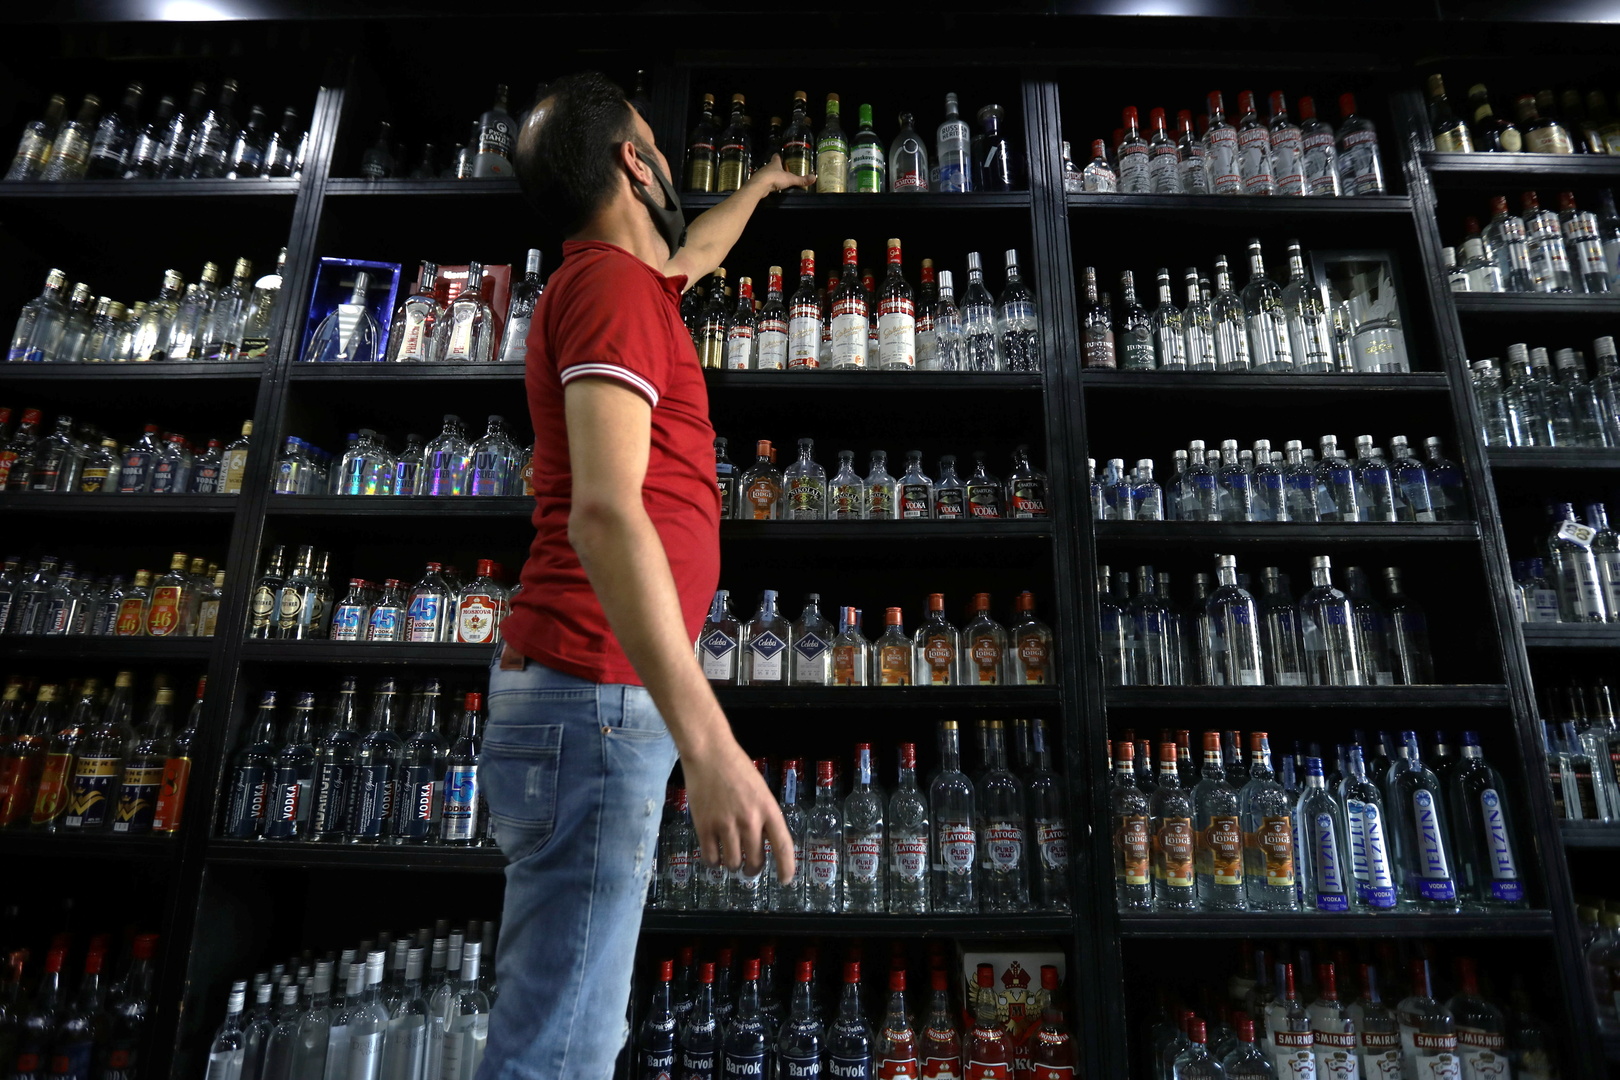 مشروب كحولي يسفر عن وفاة 10 أشخاص بولاية تلمسان الجزائرية